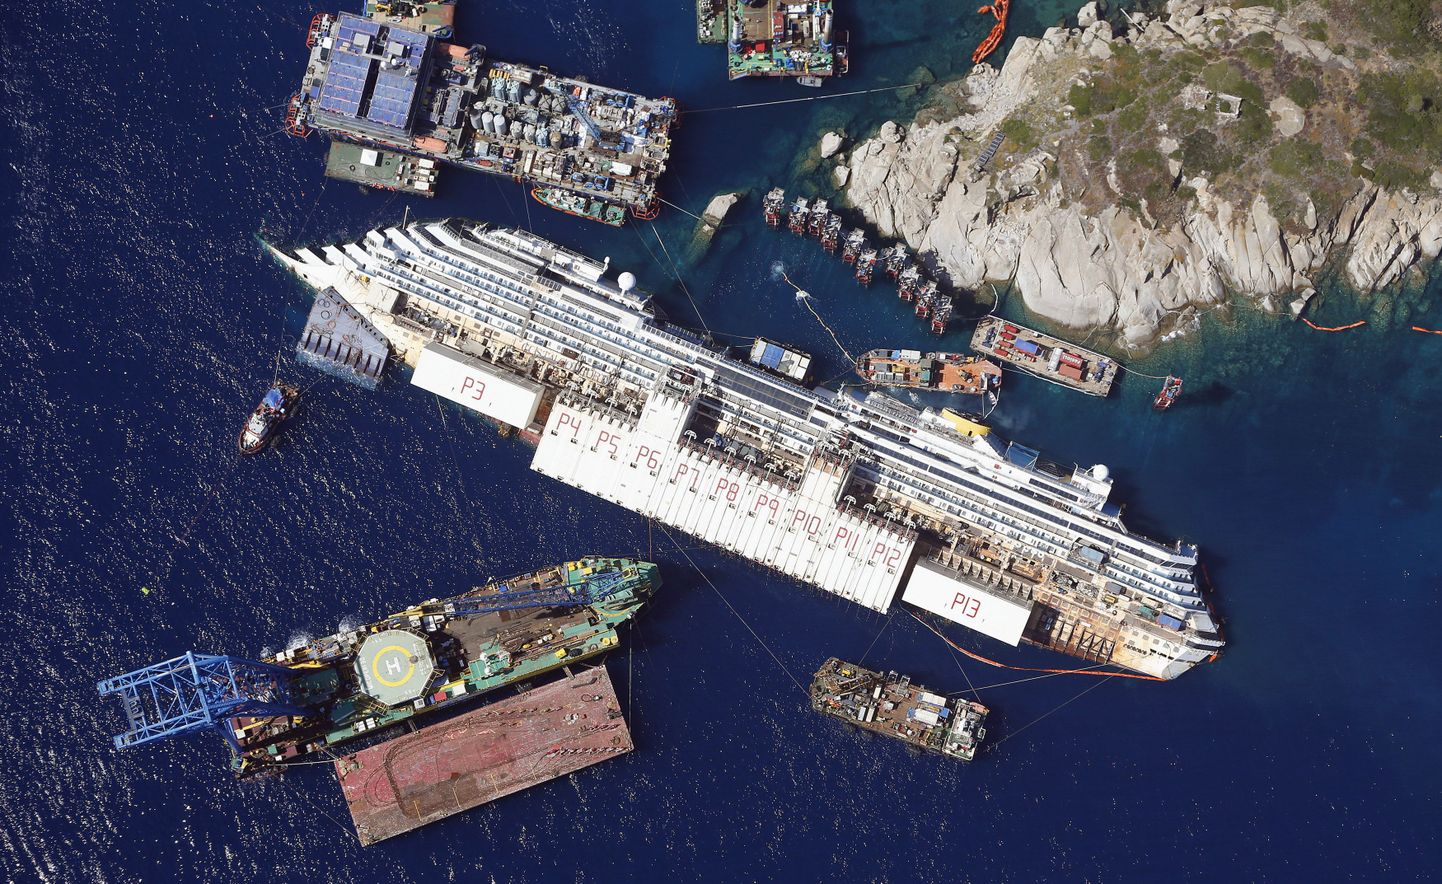 Vaade Costa Concordia vrakile ja selle ülestõstmiseks ettevalmistusi tegevatele alustele augustis.